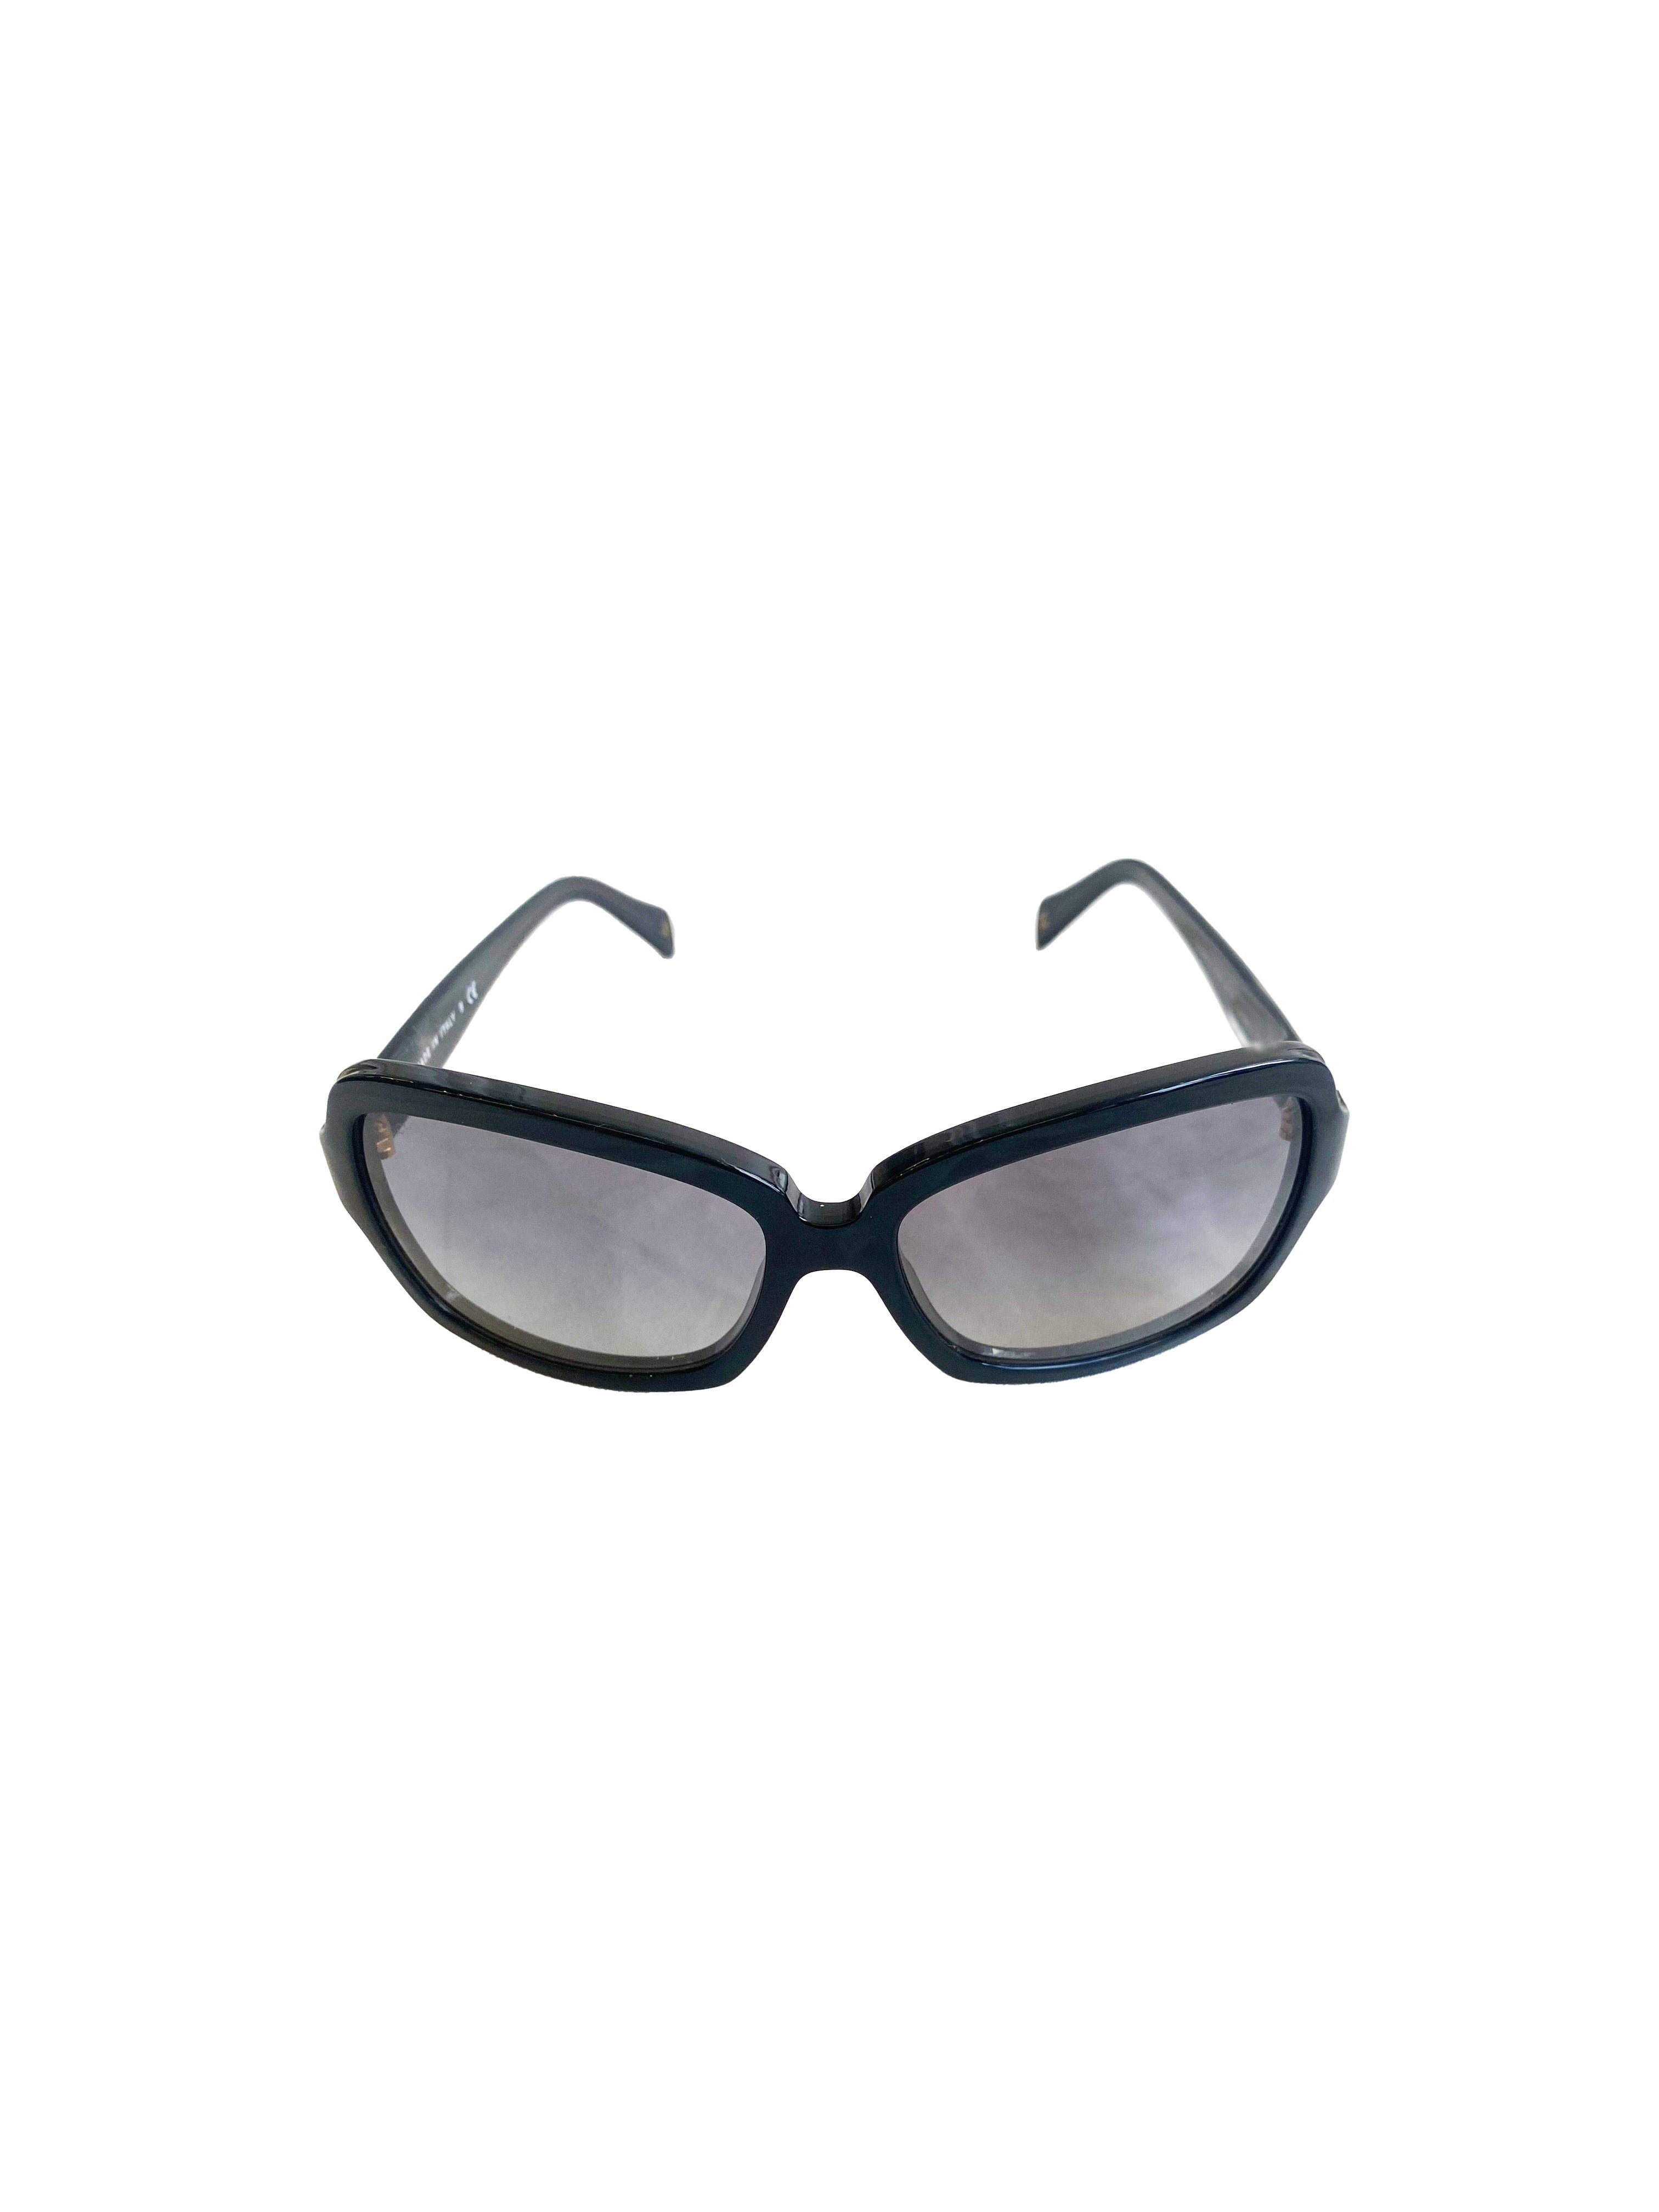 Chanel 2010s Black Logo Sunglasses · INTO